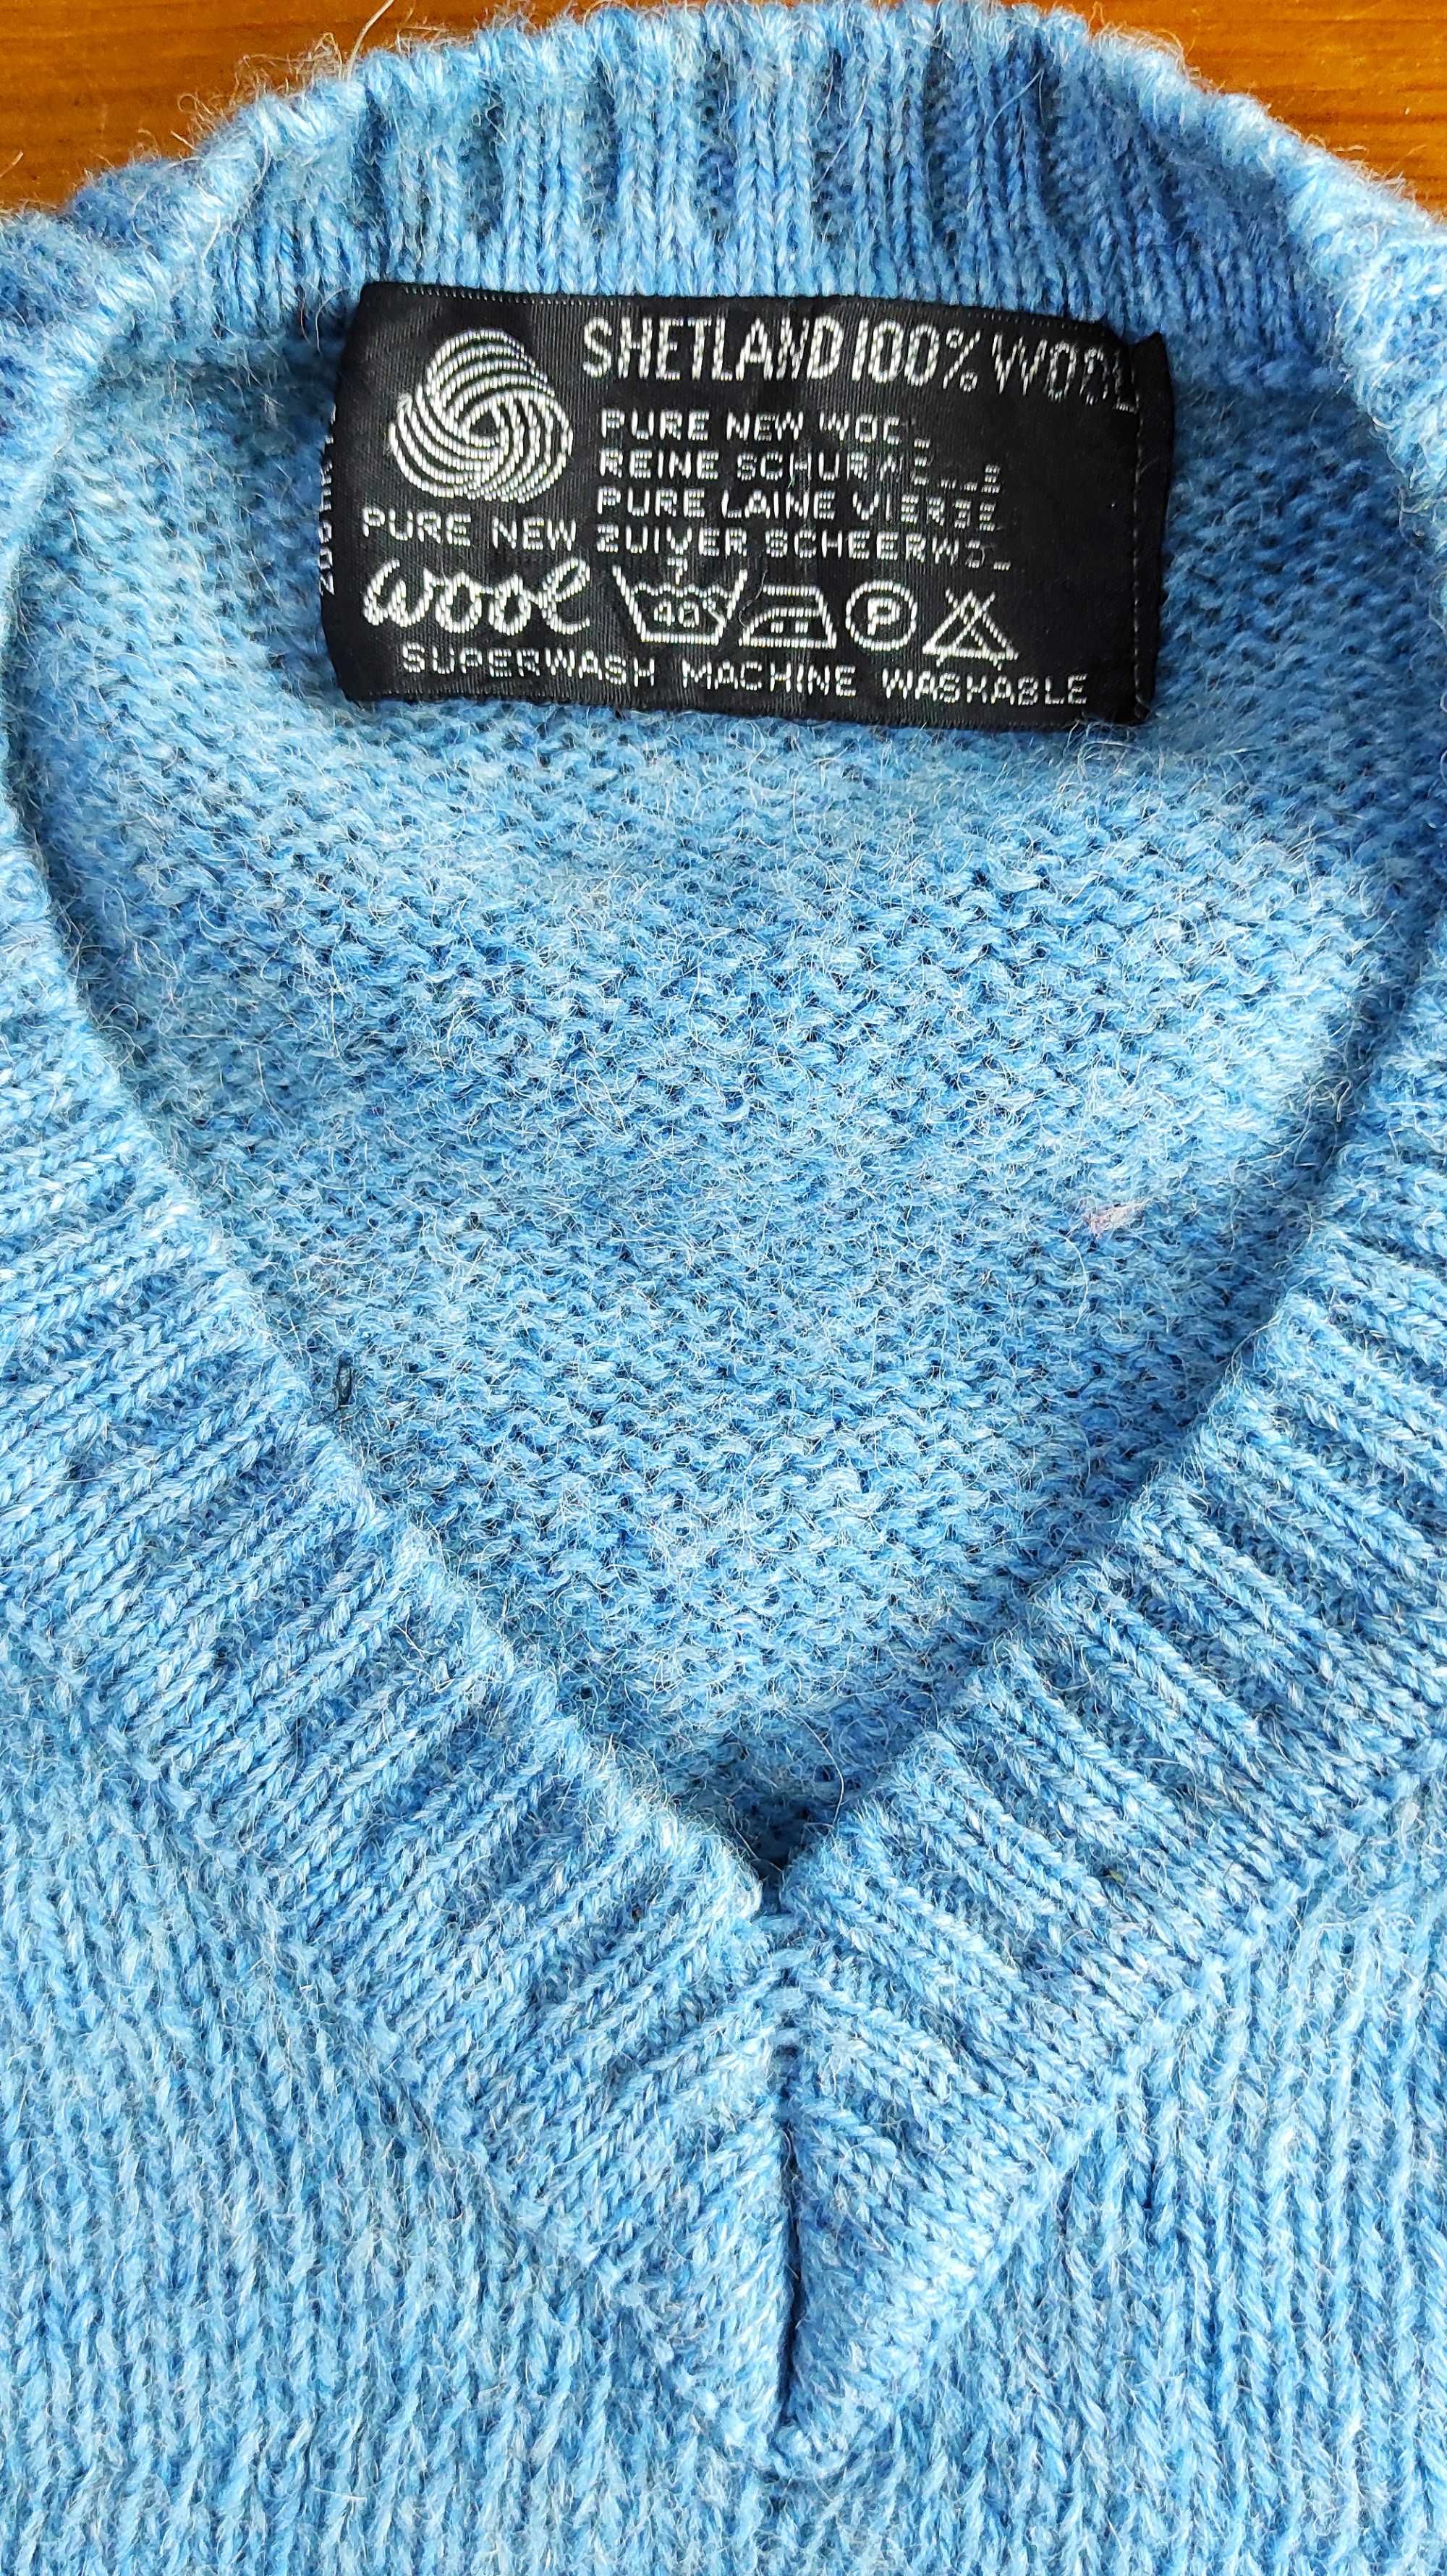 Gruby, mięsisty, niebieski sweter w serek z wełny szetandzkiej 100%